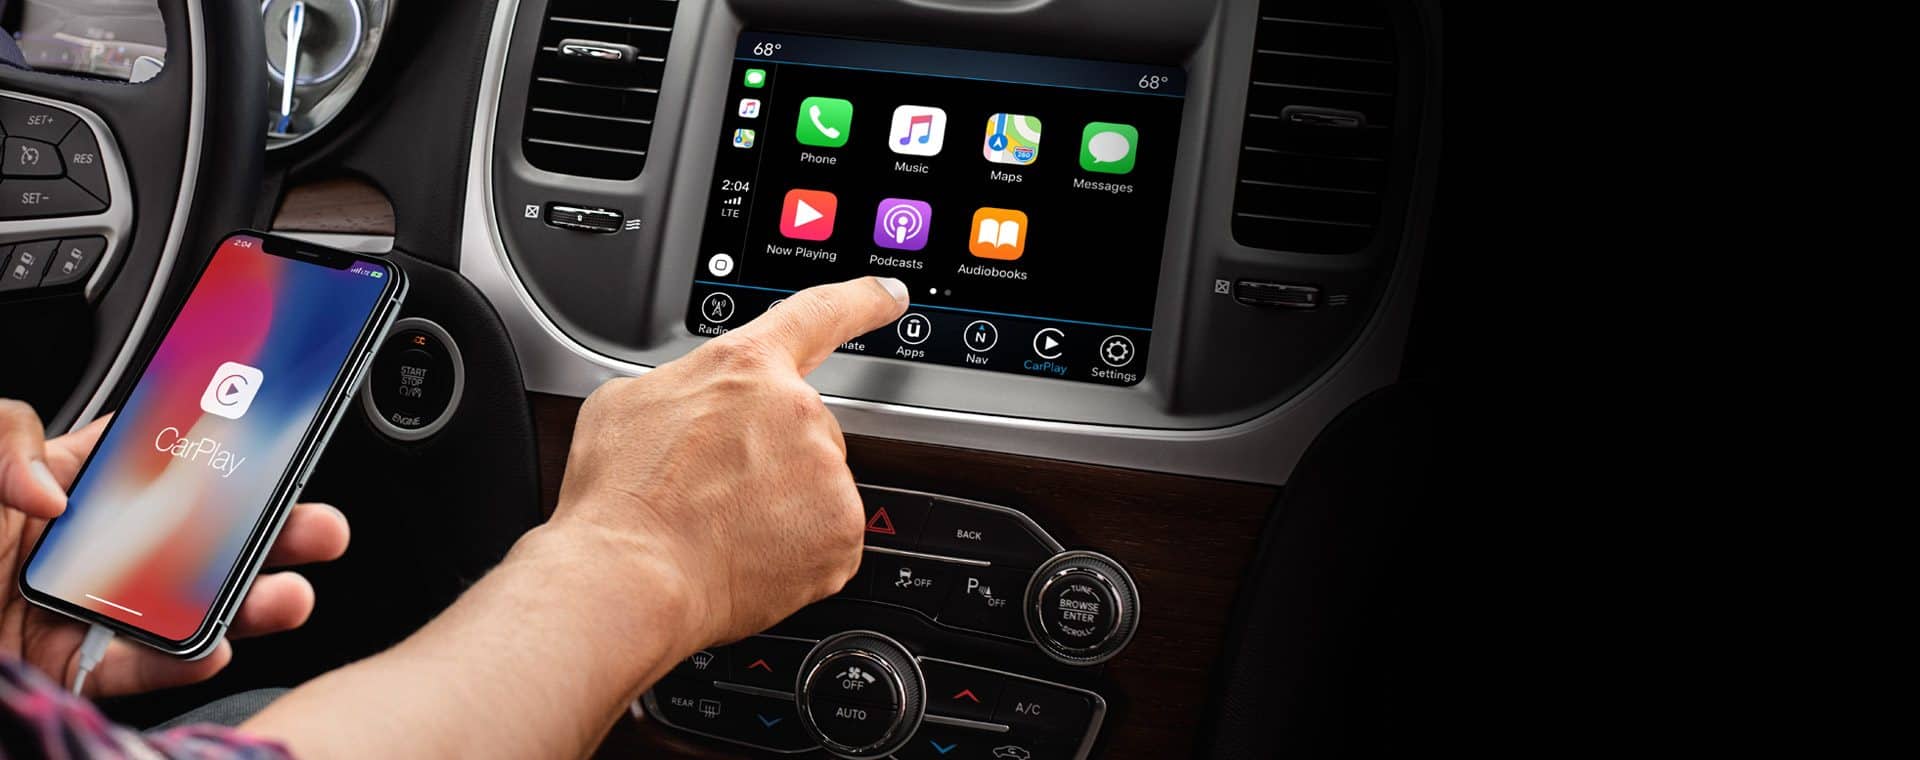 Uconnect System - Hands-Free Navigation, Communication - Chrysler